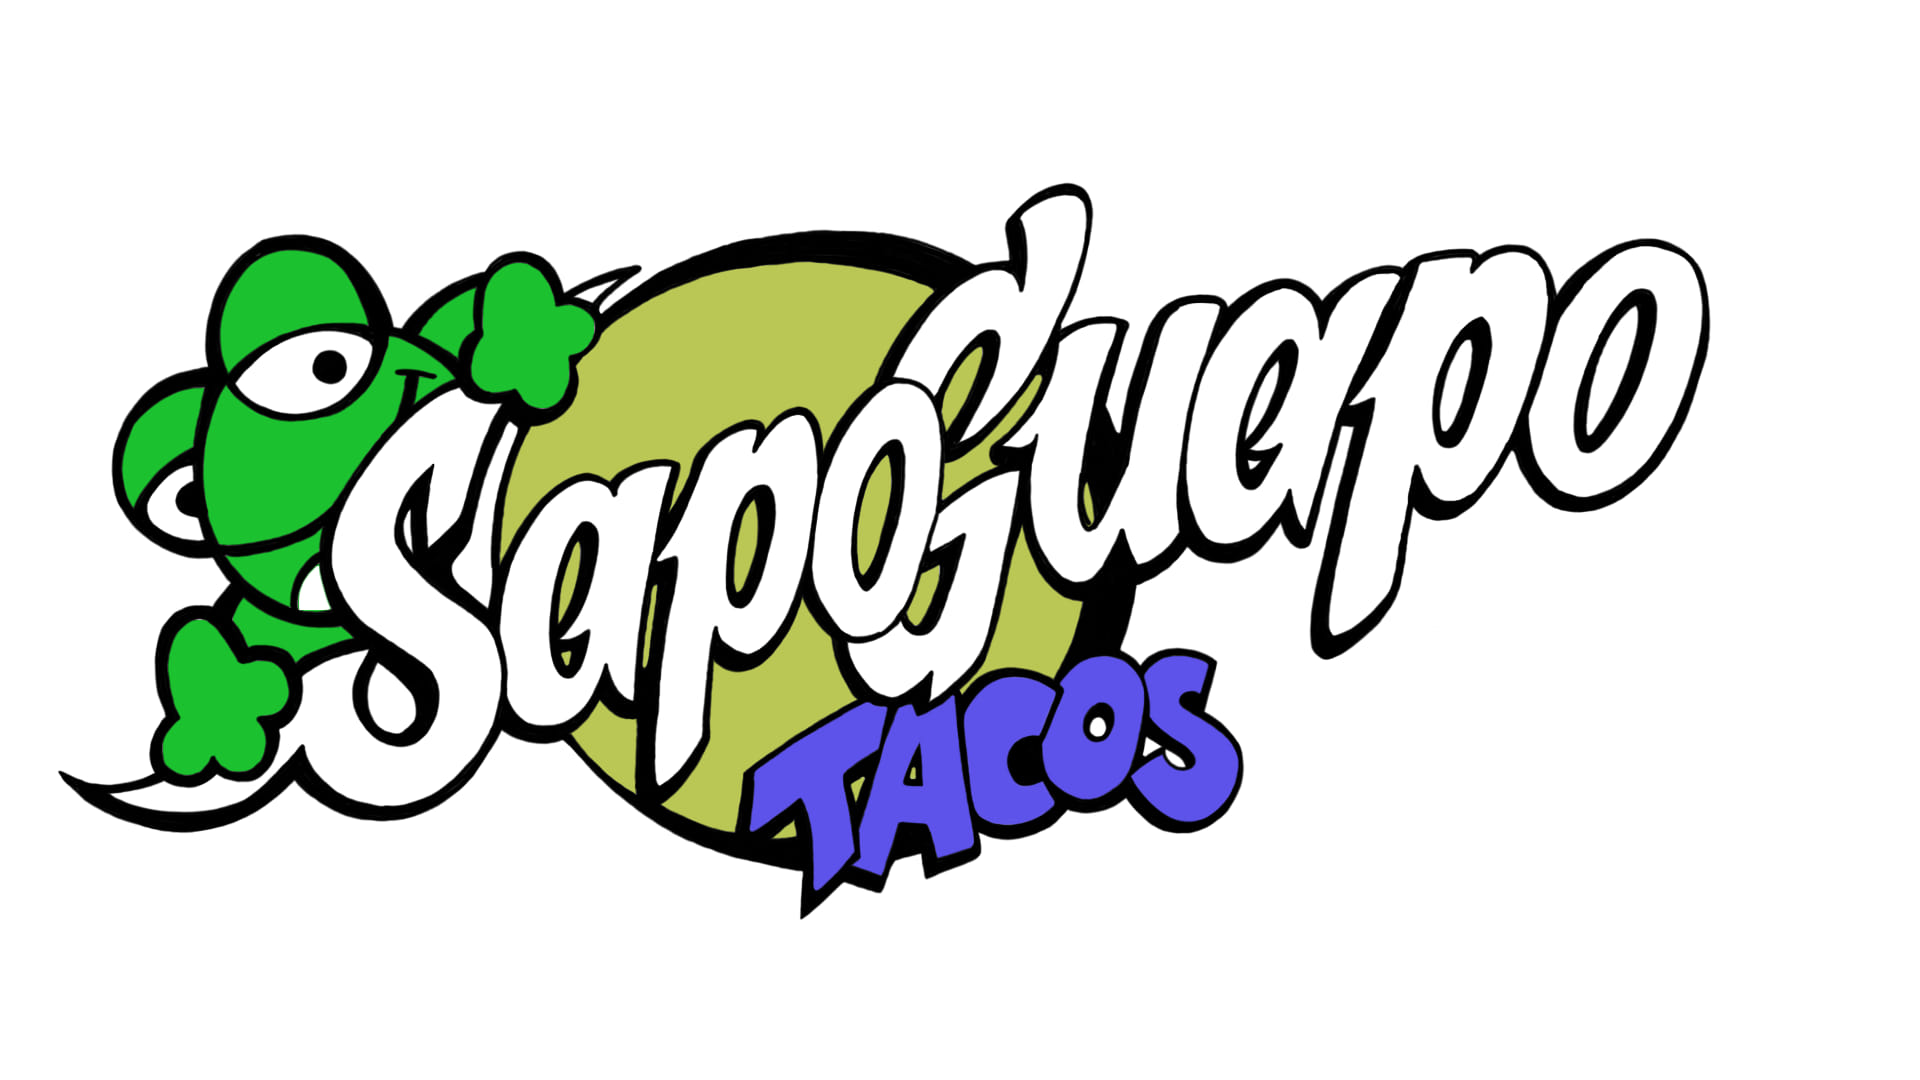 Sapo Guapo Tacos